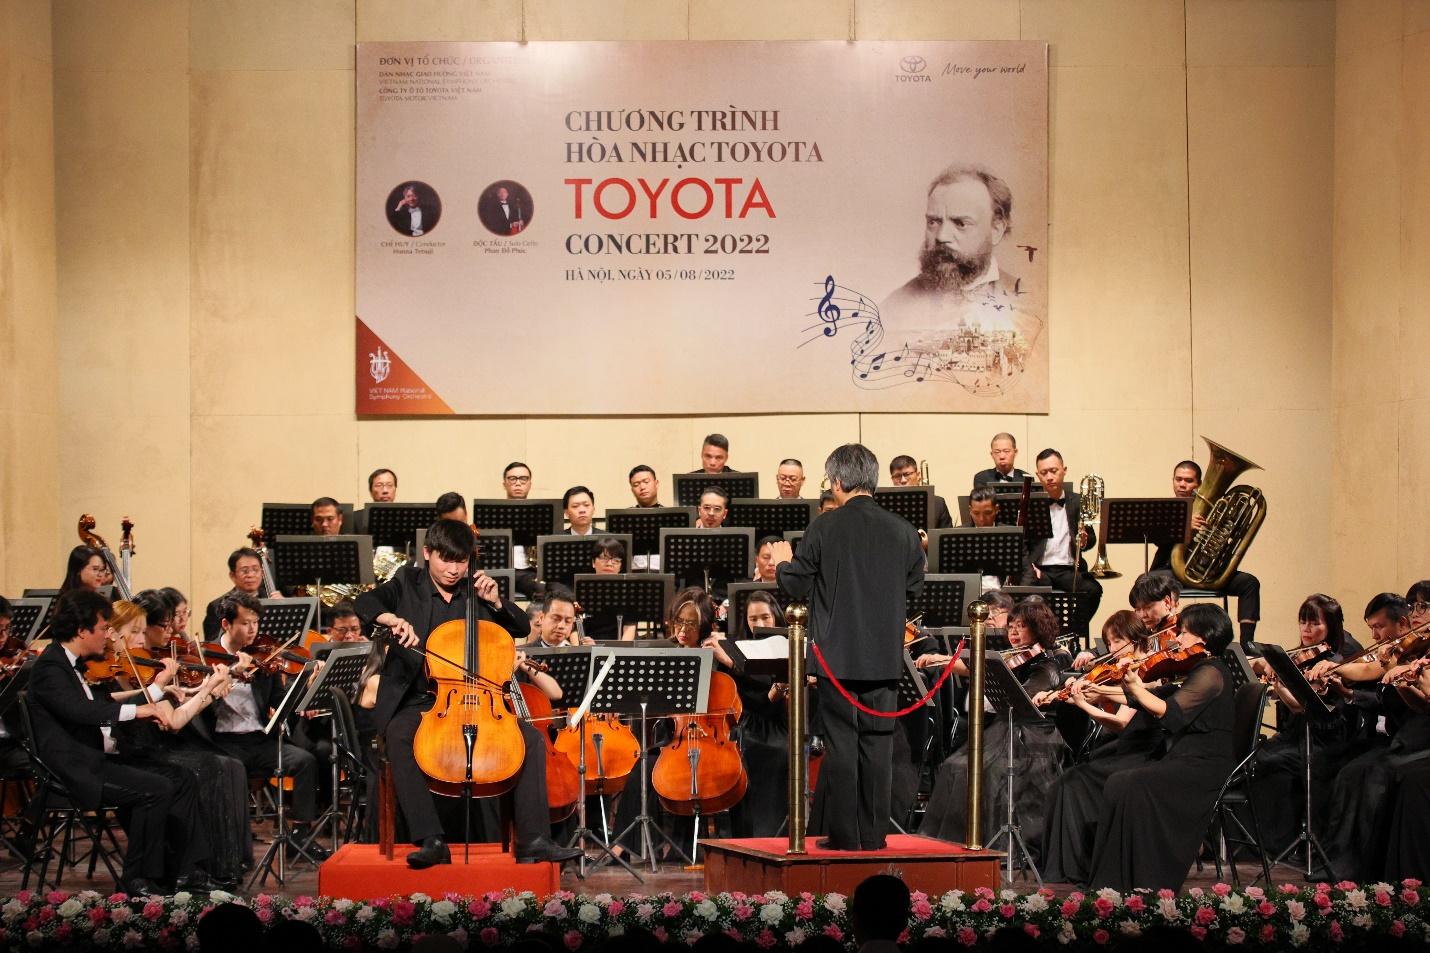 Hòa nhạc Toyota 2022 tại Nhà hát Lớn Hà Nội tối ngày 05/08